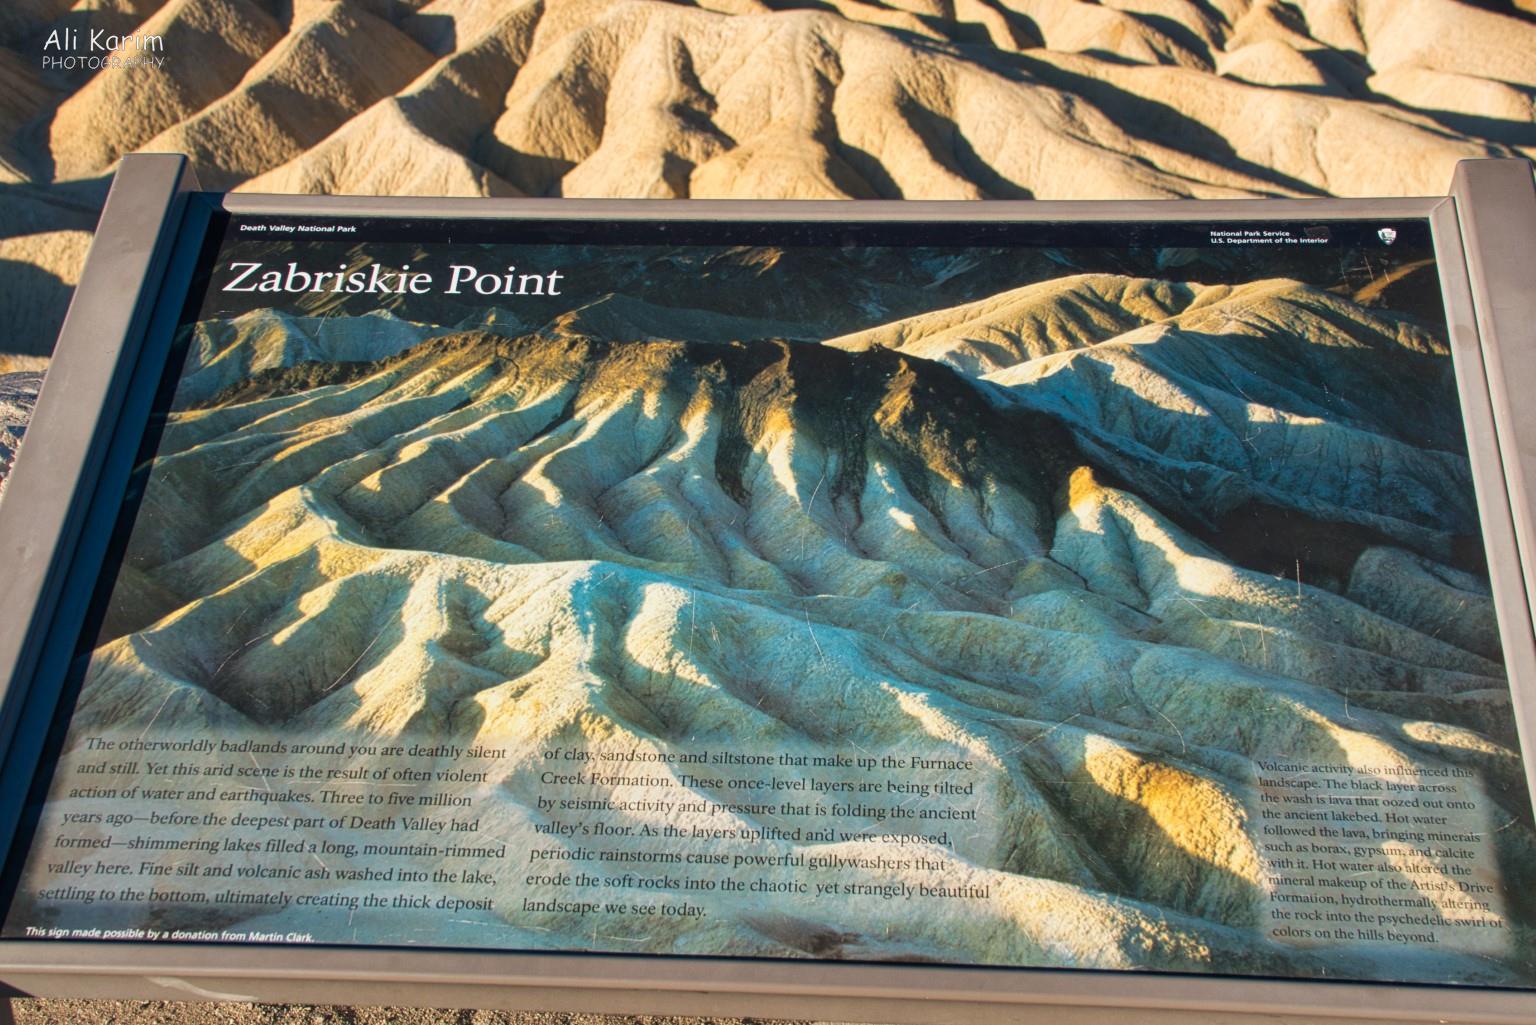 Death Valley National Park, June 2020, About Zabriskie Point